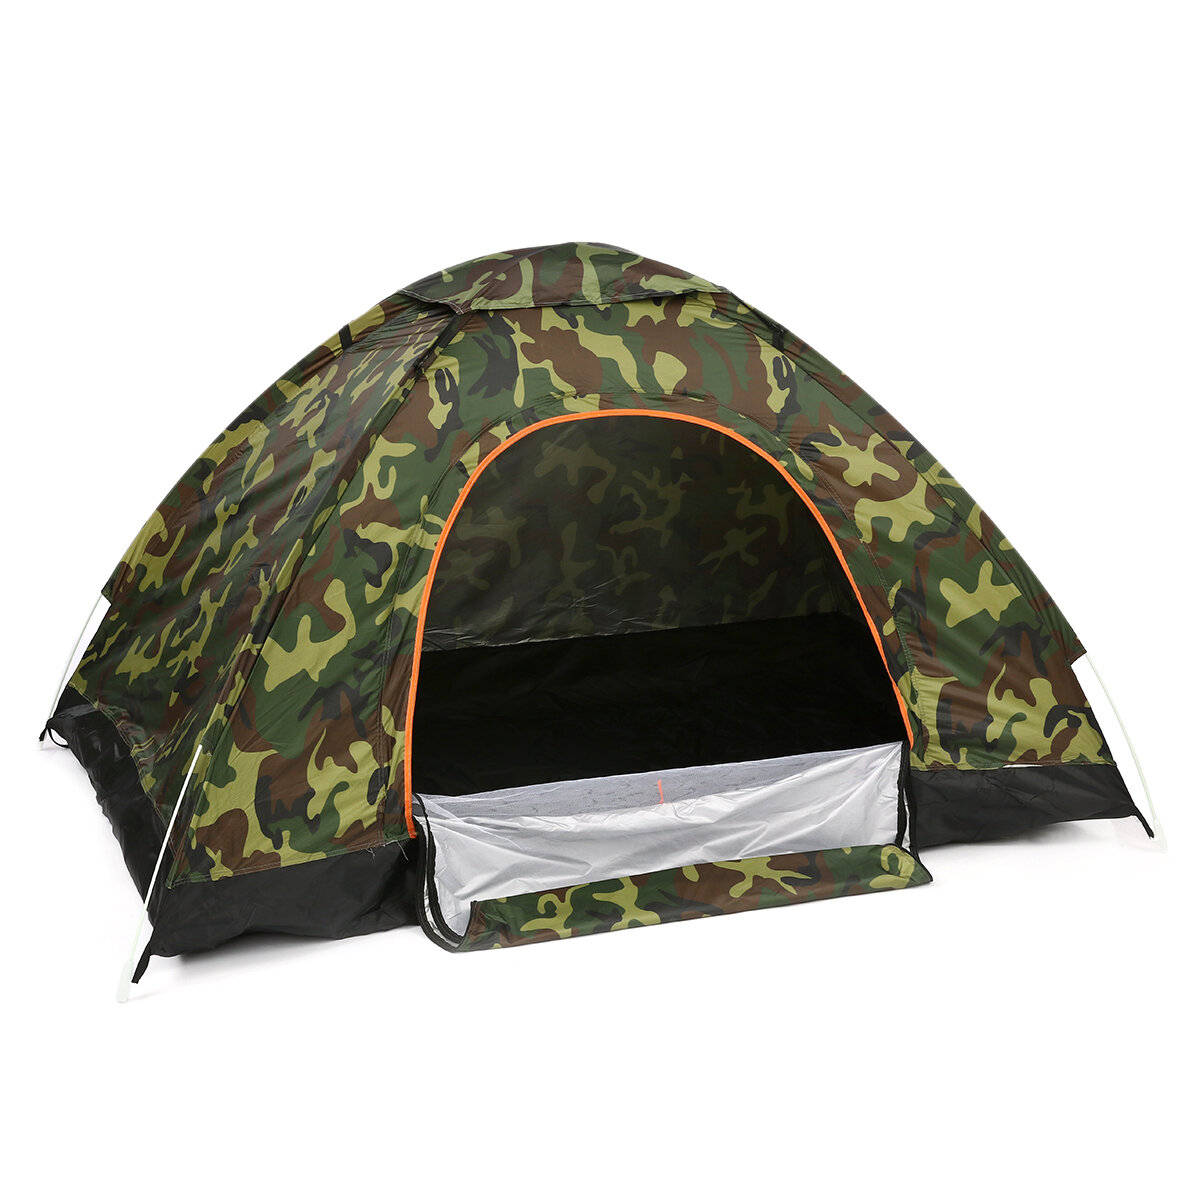 2〜3人用のポータブルダブルドア折りたたみテント、防水完全自動テント、アウトドアキャンプ、ハイキング、旅行用サンシェード。